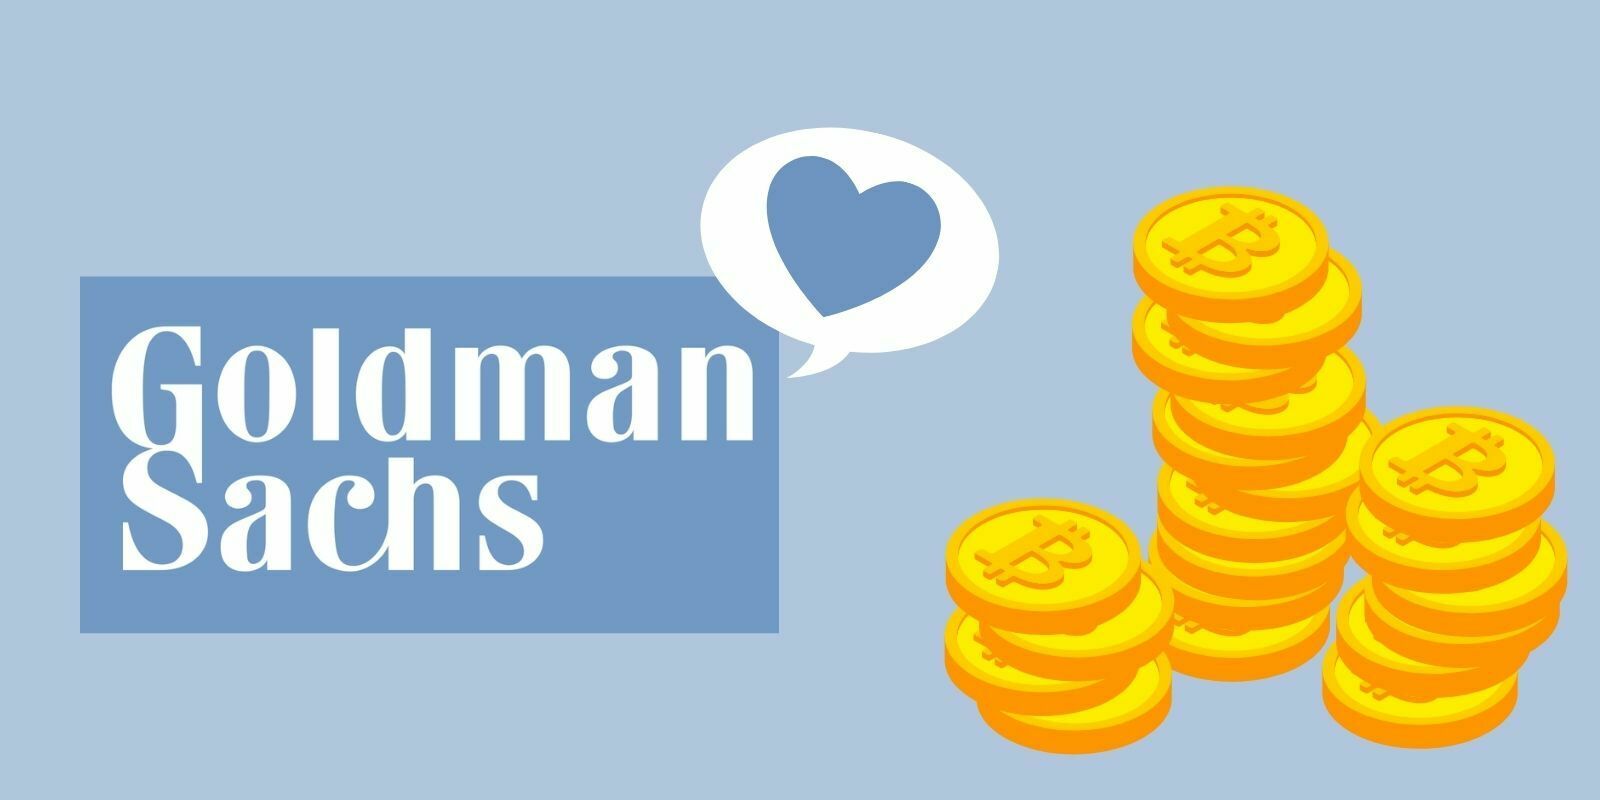 Goldman Sachs reconnaît les cryptomonnaies comme une nouvelle classe d’actifs